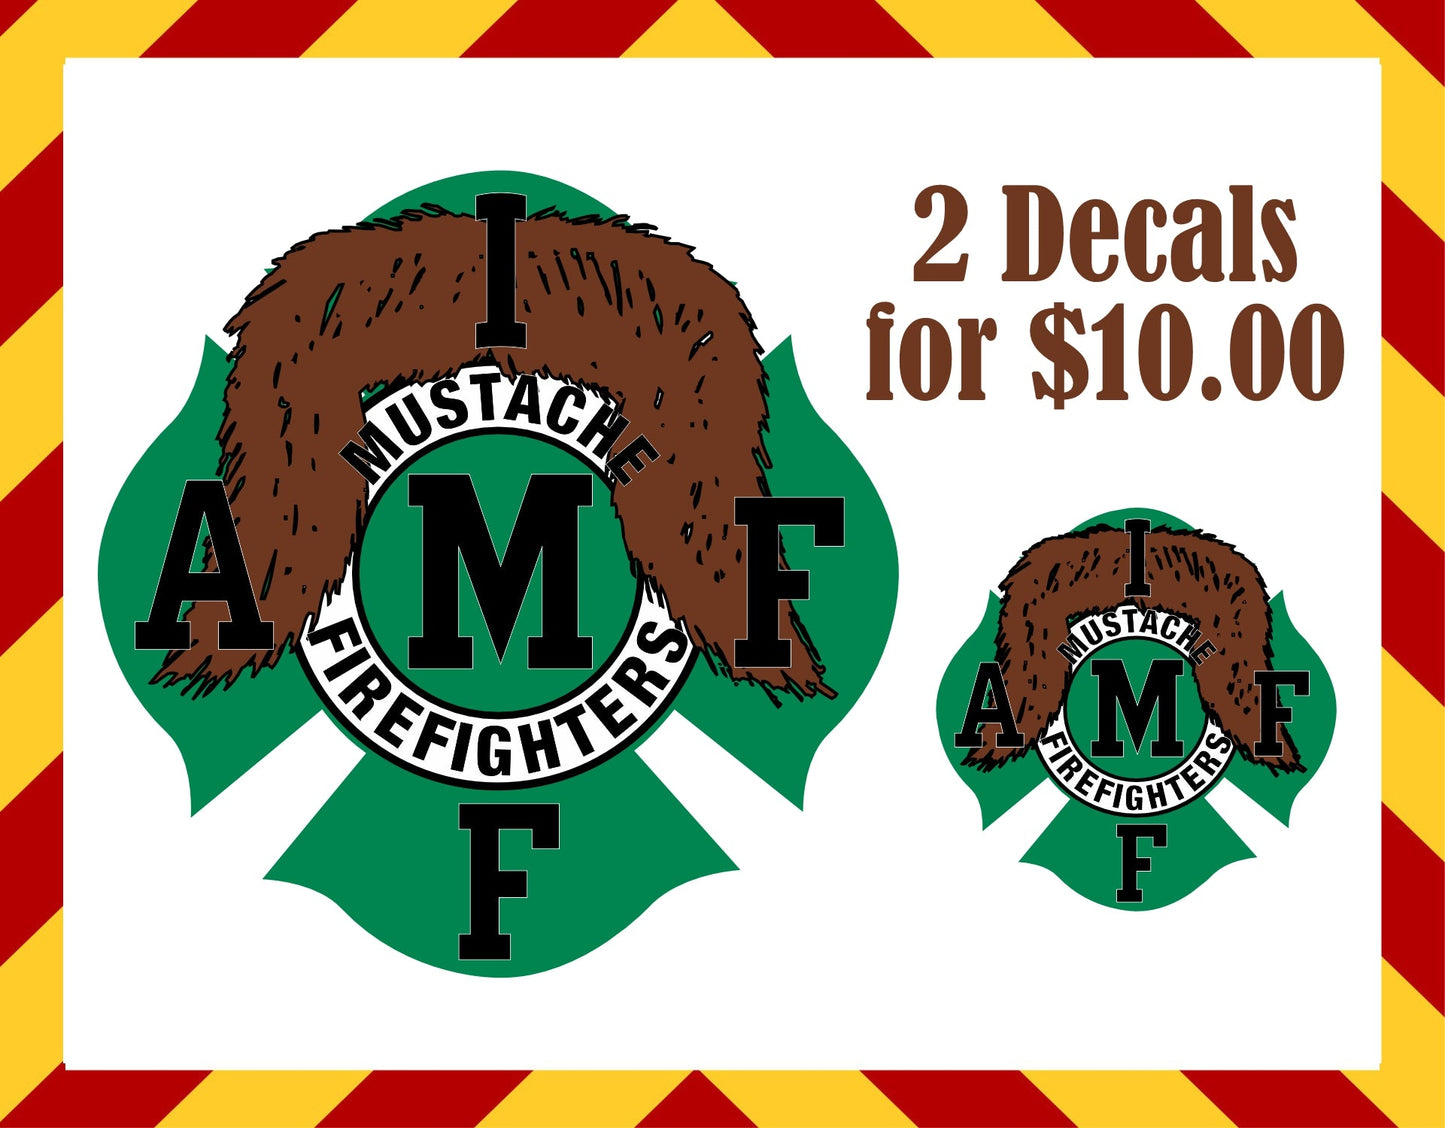 Window Sticker & Hard Hat Sticker -Mustache Firefighter Maltese set of decals